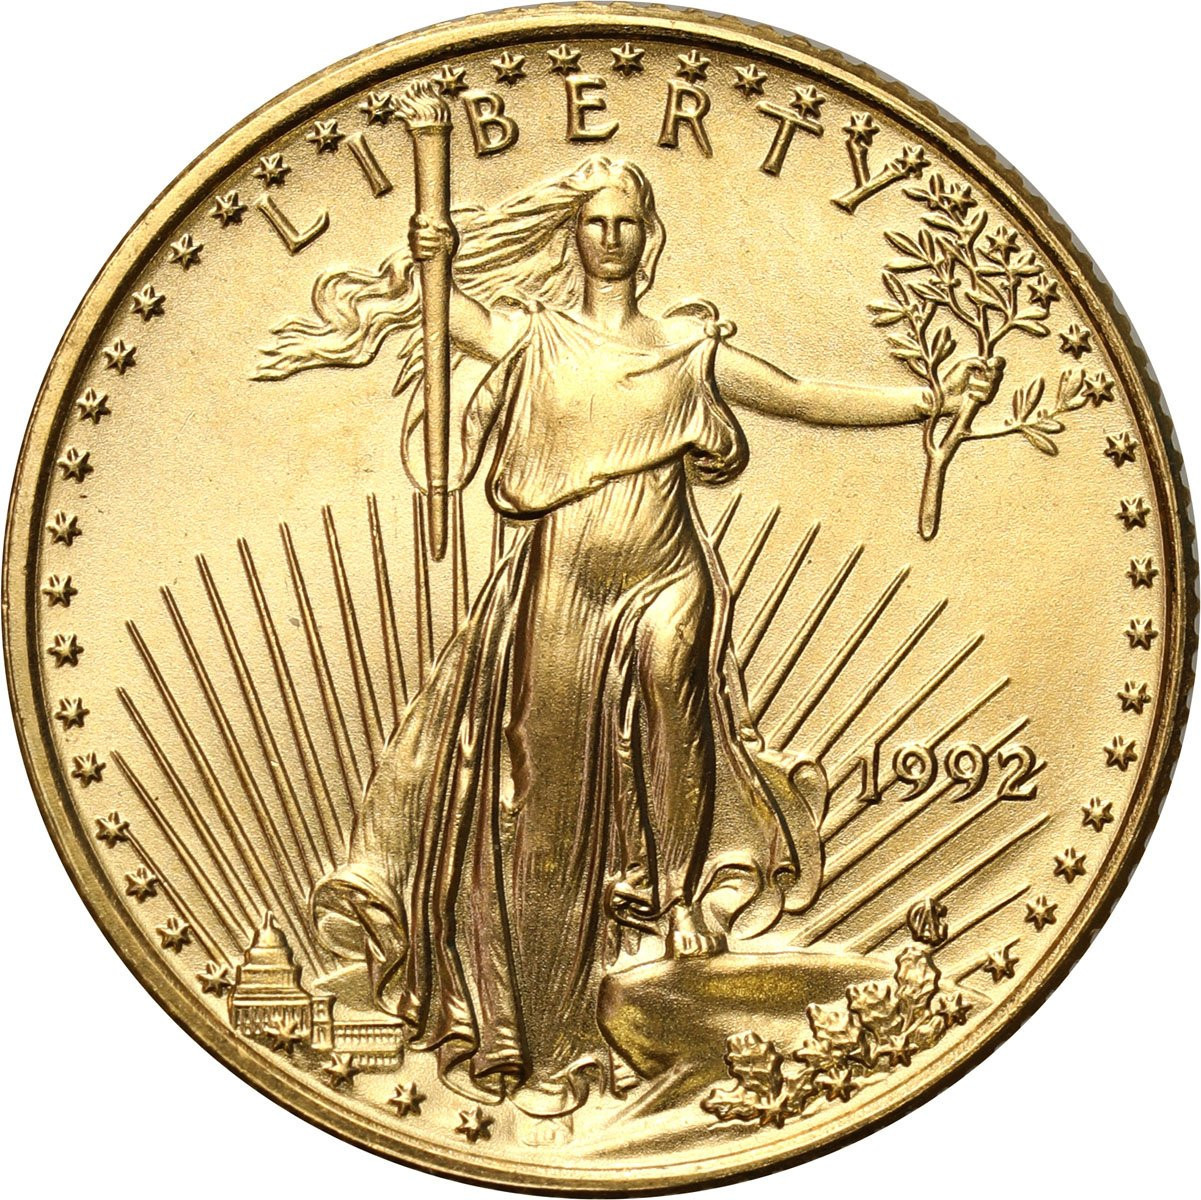 USA 5 dolarów 1992 (1/10 uncji złota)